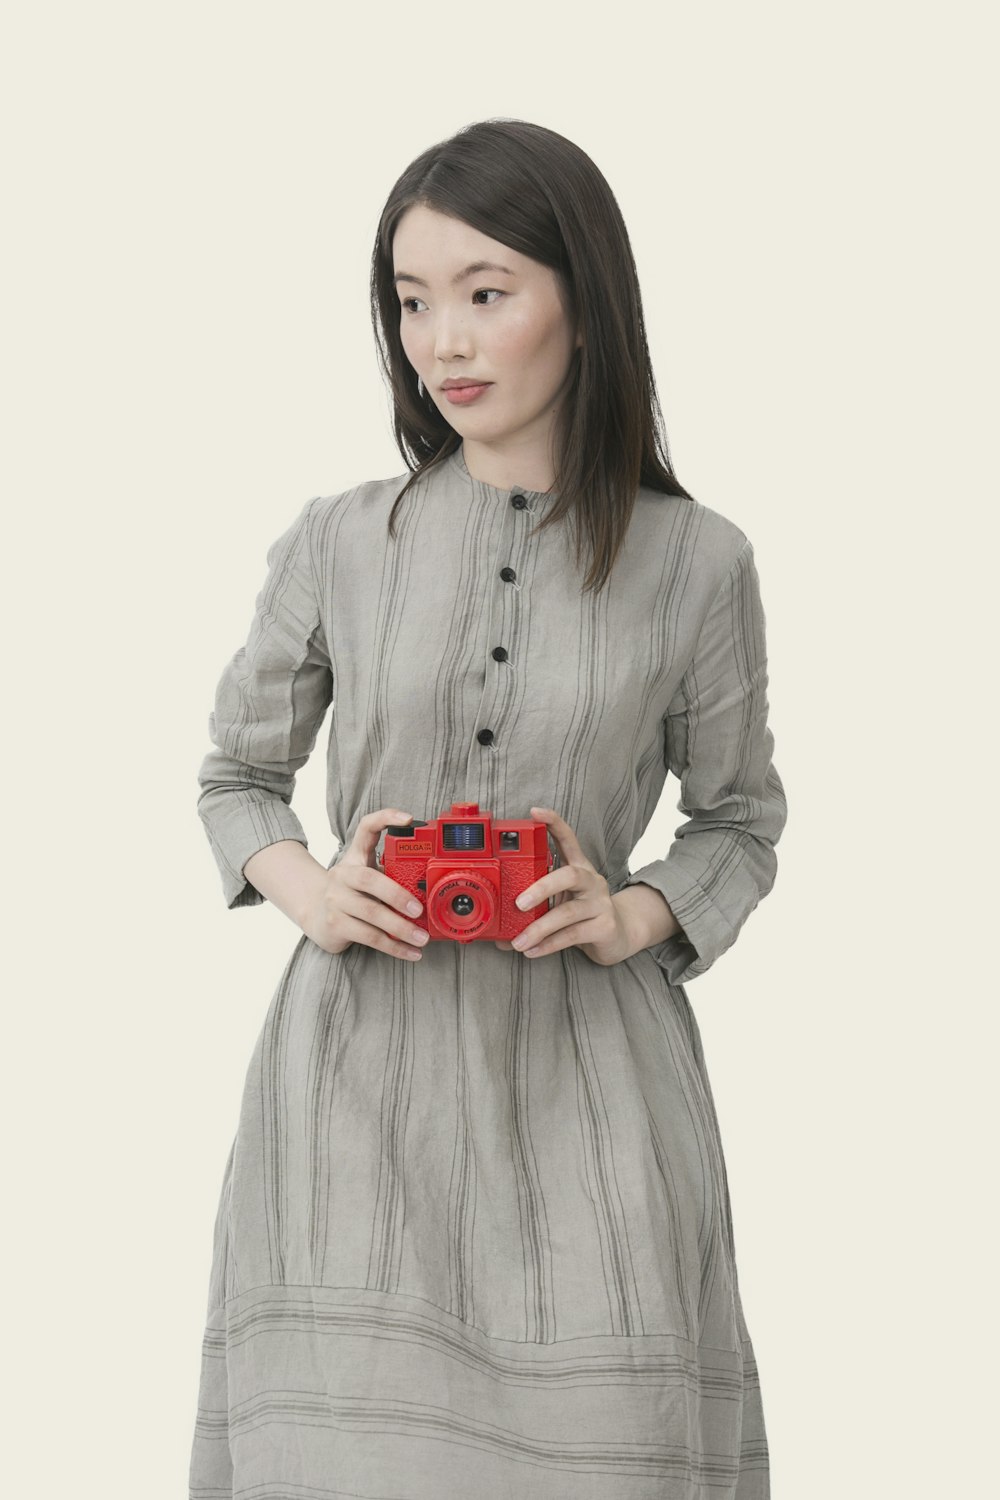 donna che indossa un vestito a maniche lunghe abbottonato a righe grigie che tiene in mano una fotocamera rossa point-and-shoot